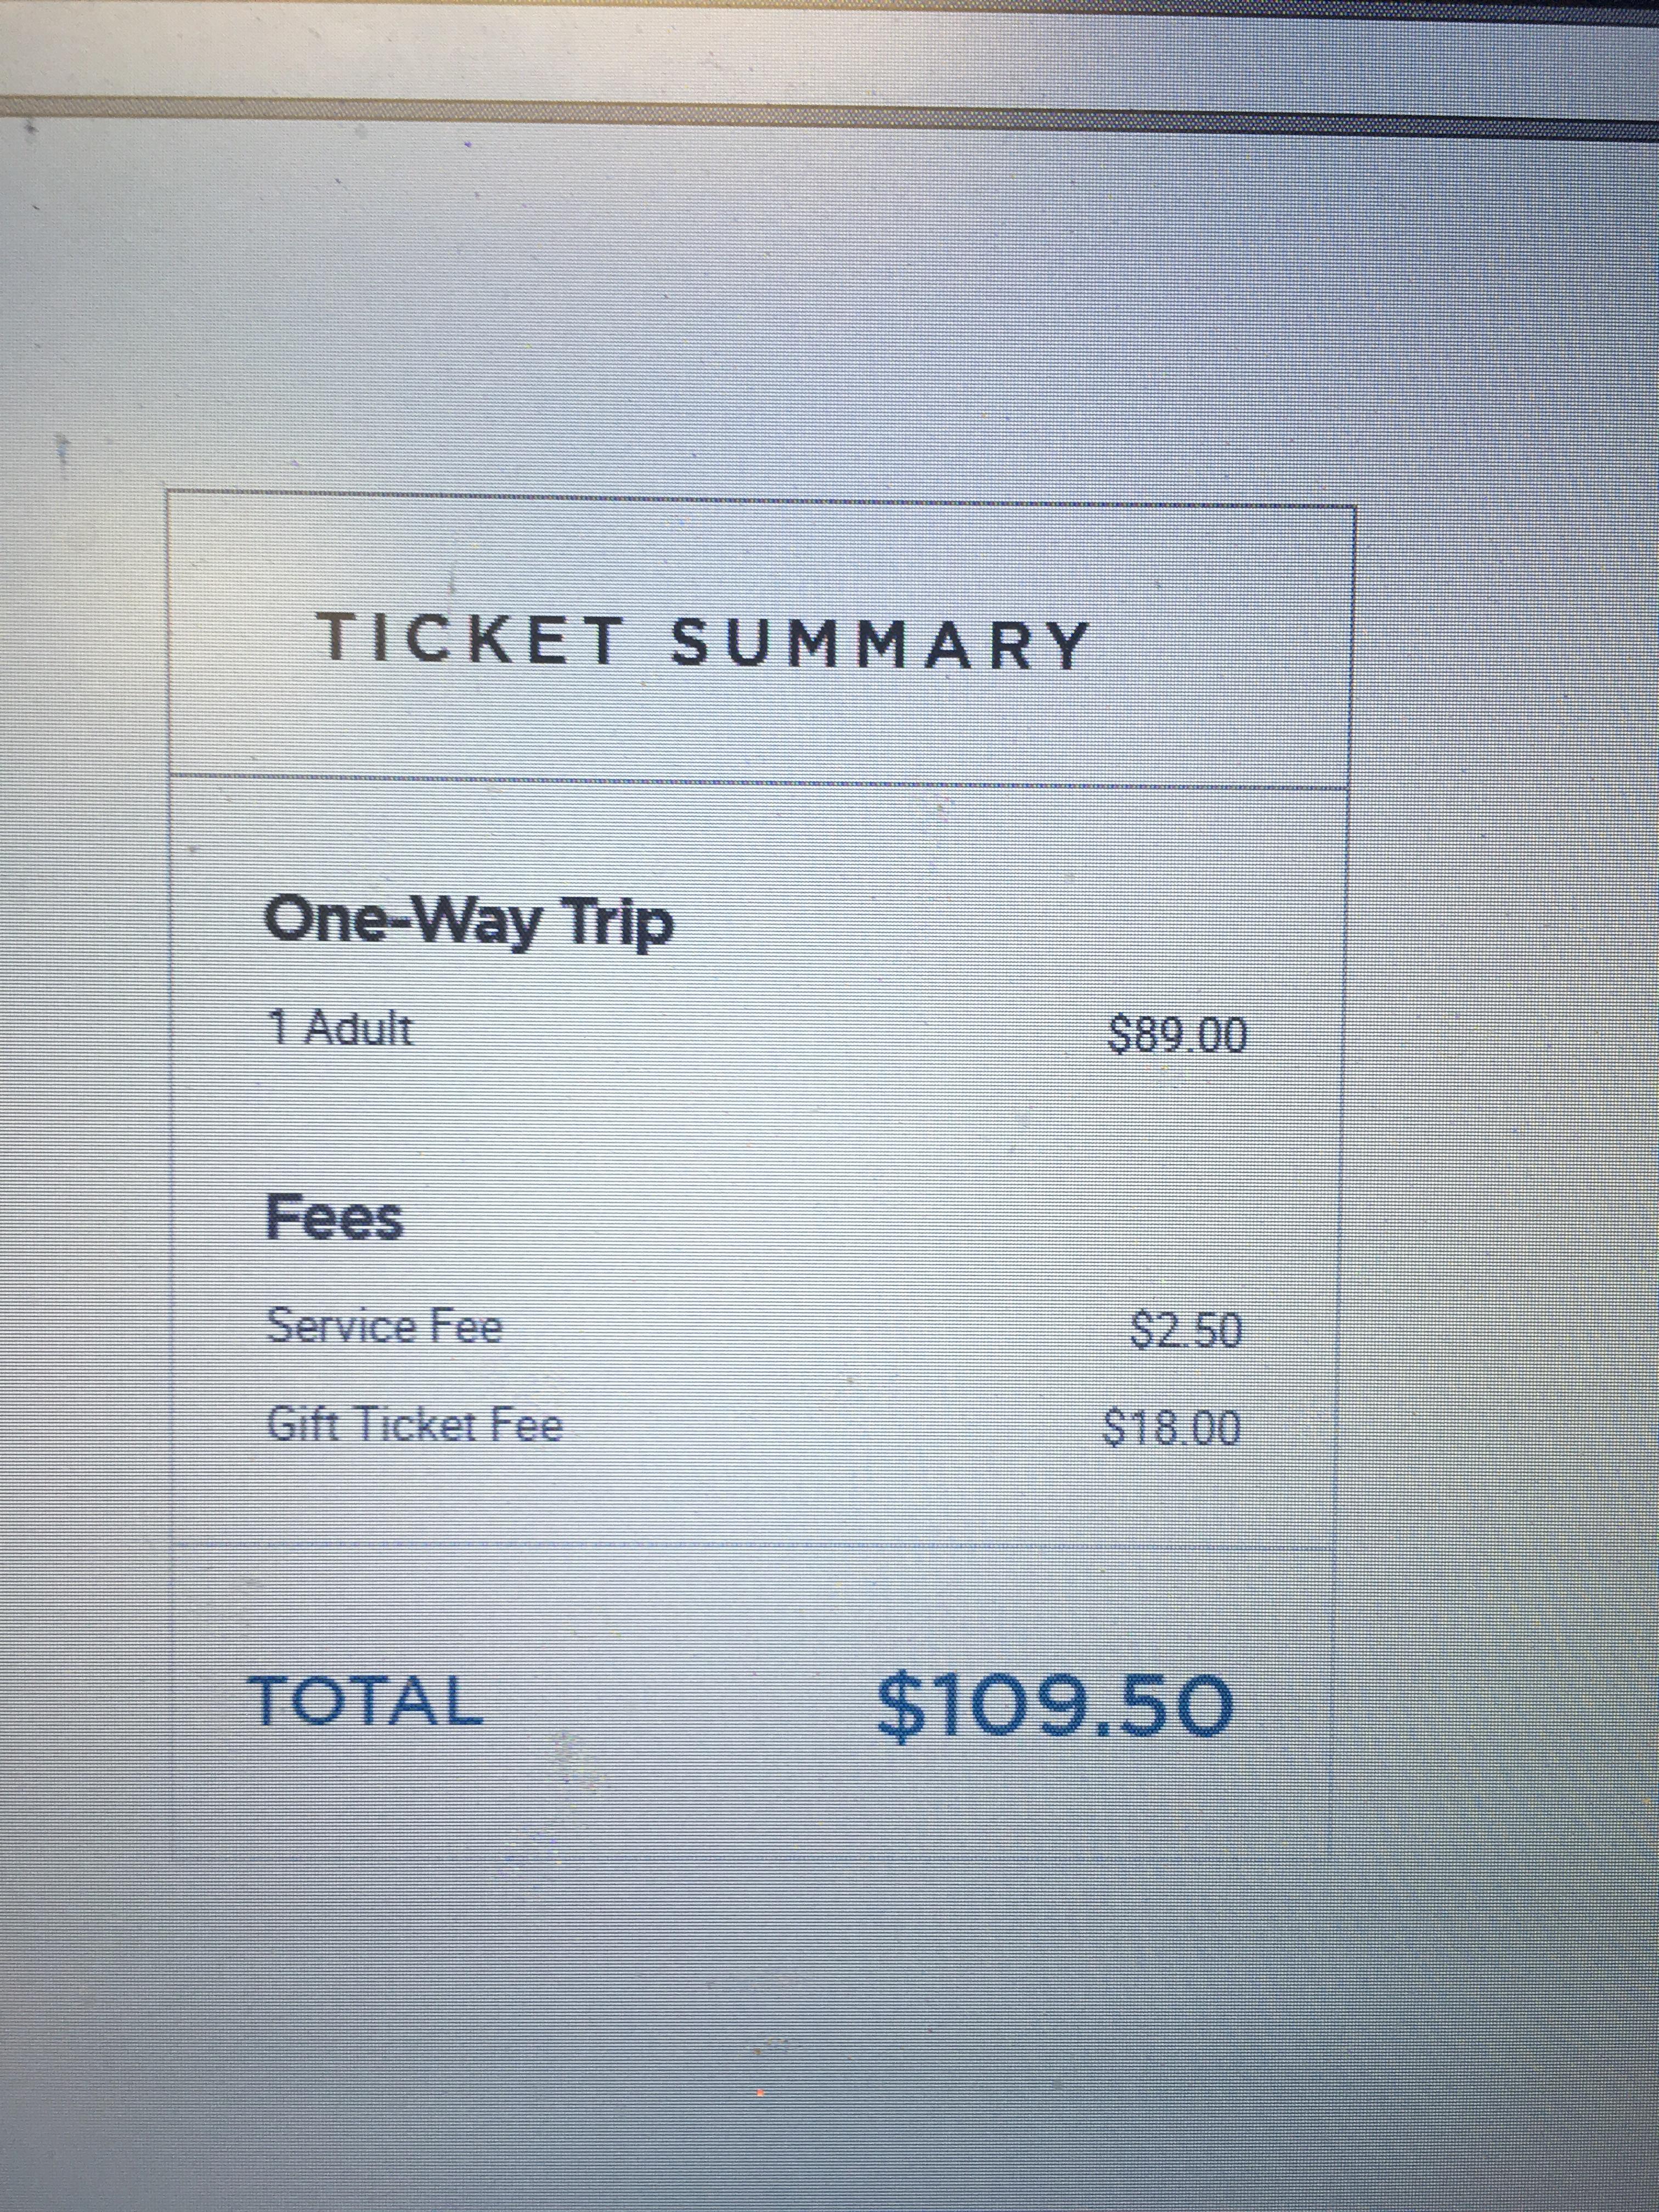 greyhound bus ticket prices one way